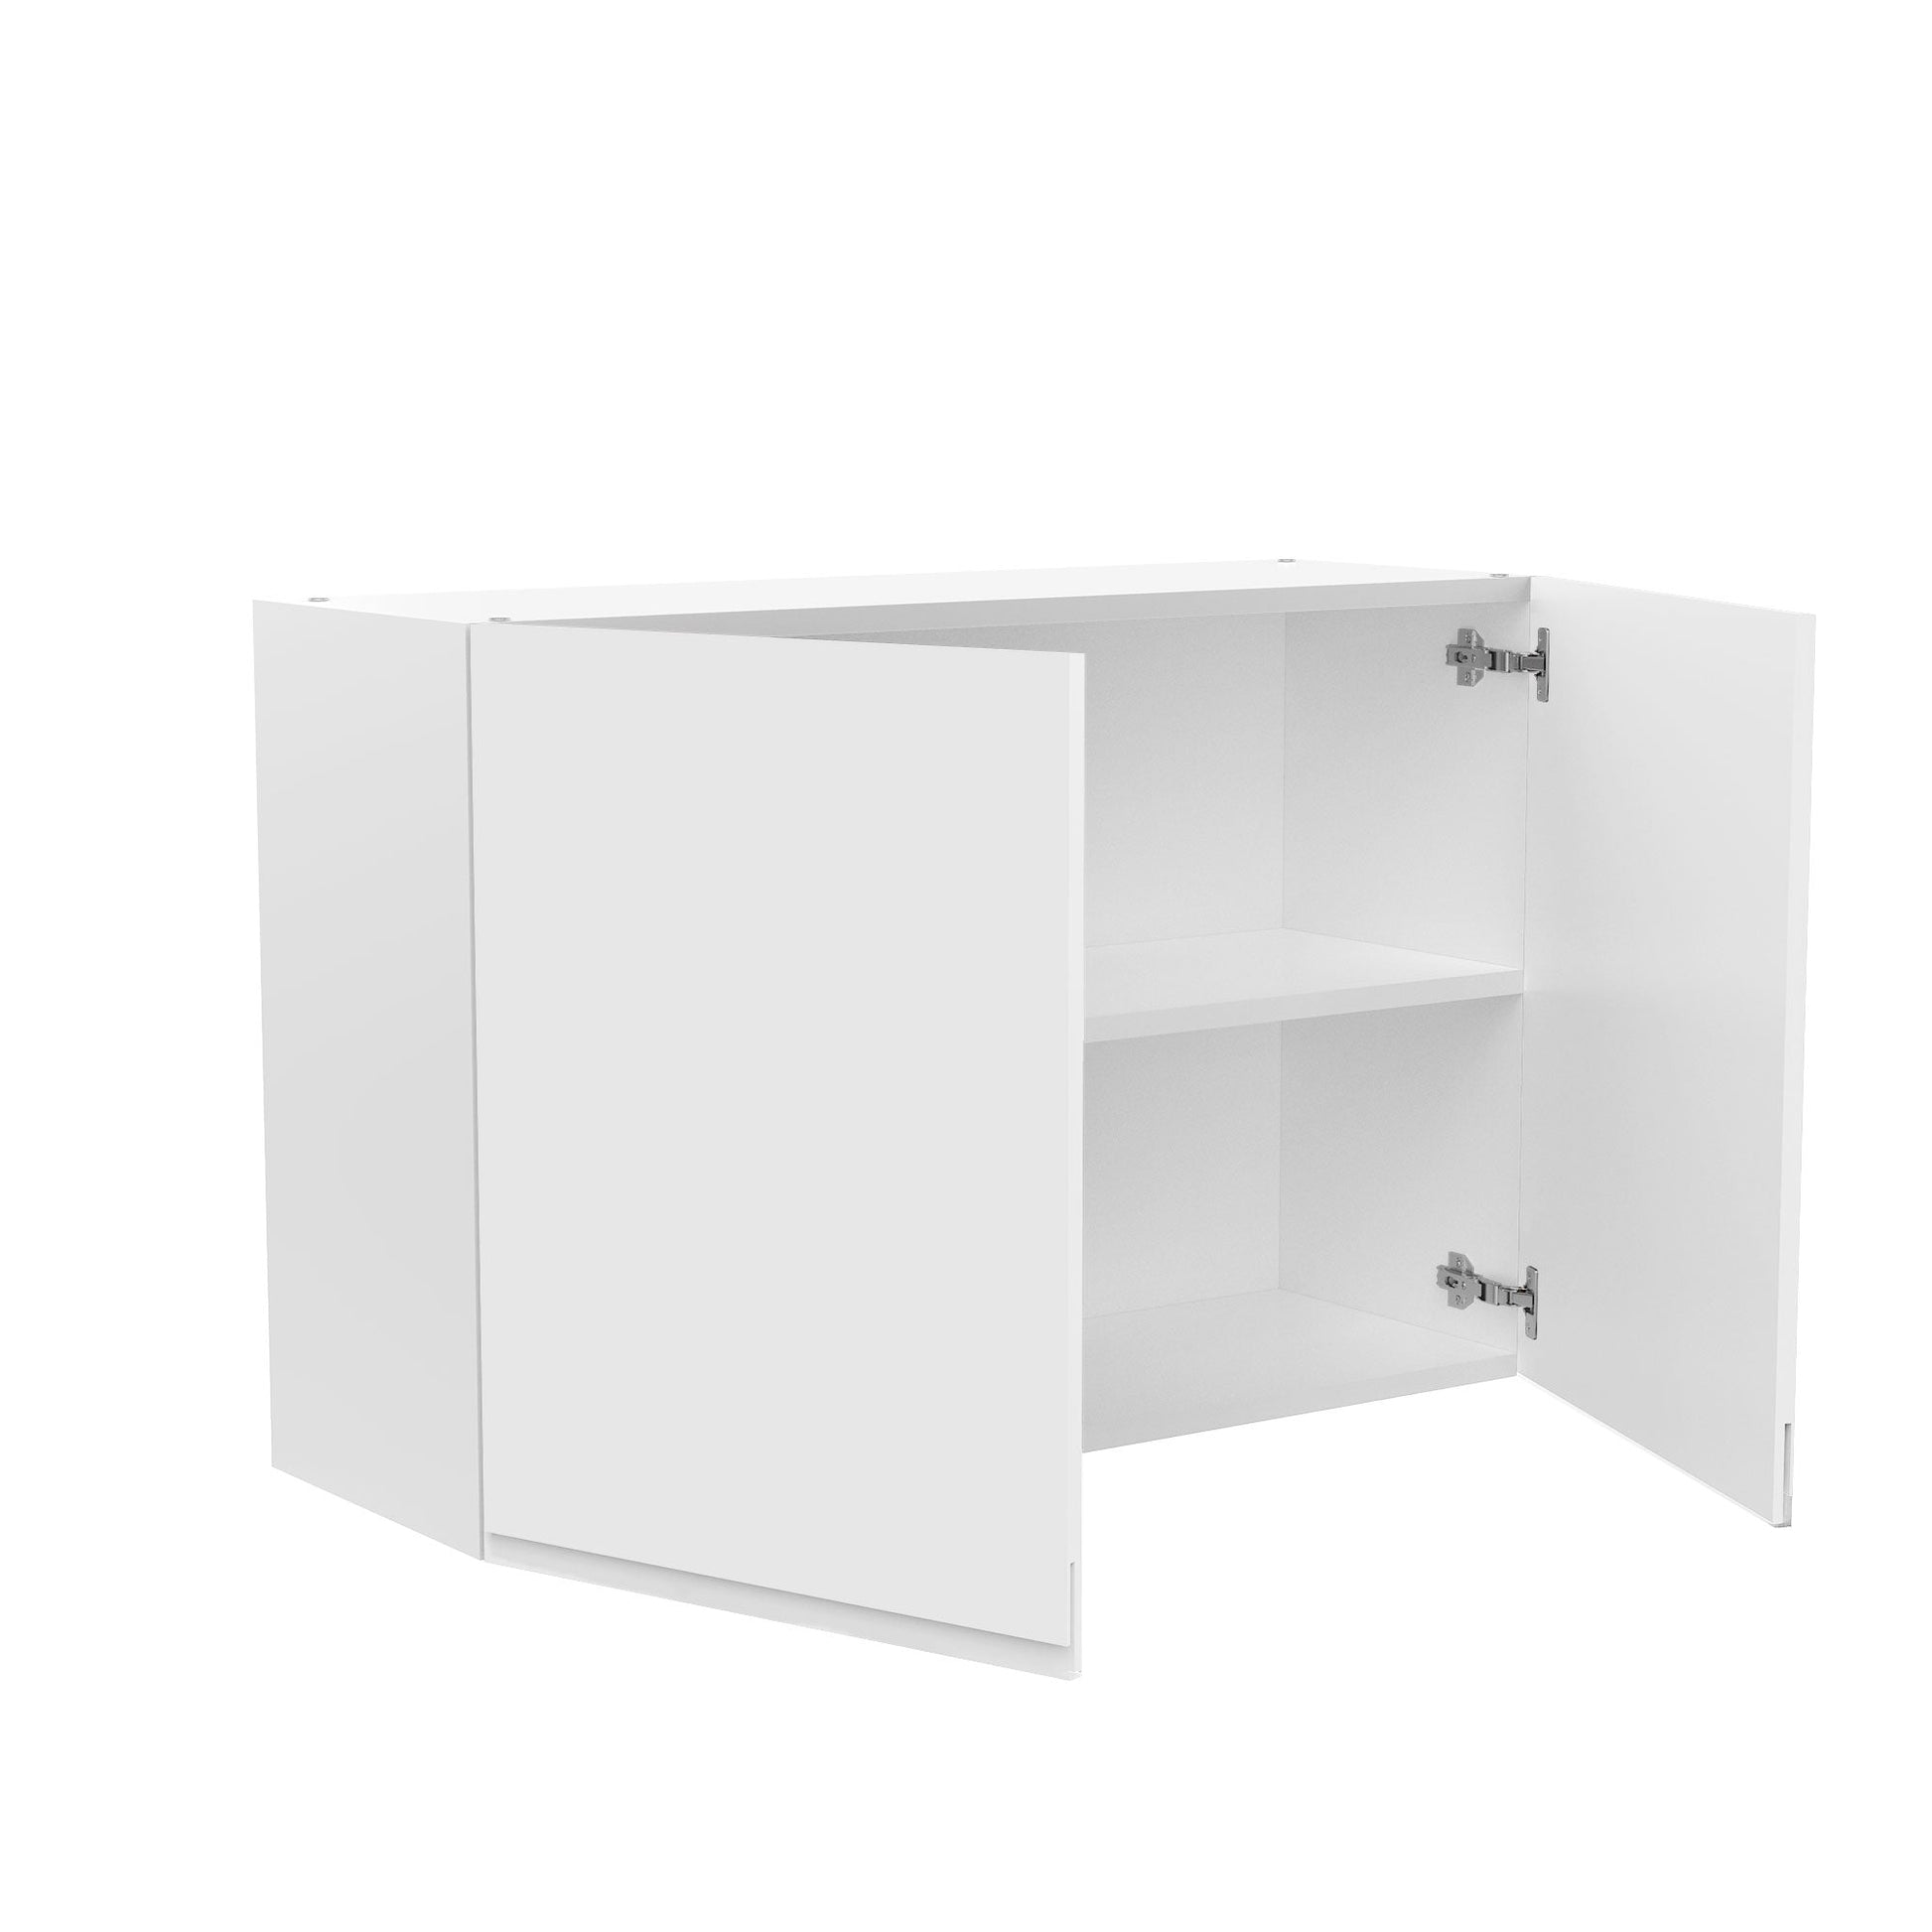 CabinetRTA Soft-Close DIY Slide Out Cabinet Shelf Wood Drawer Storage/Side  Mount